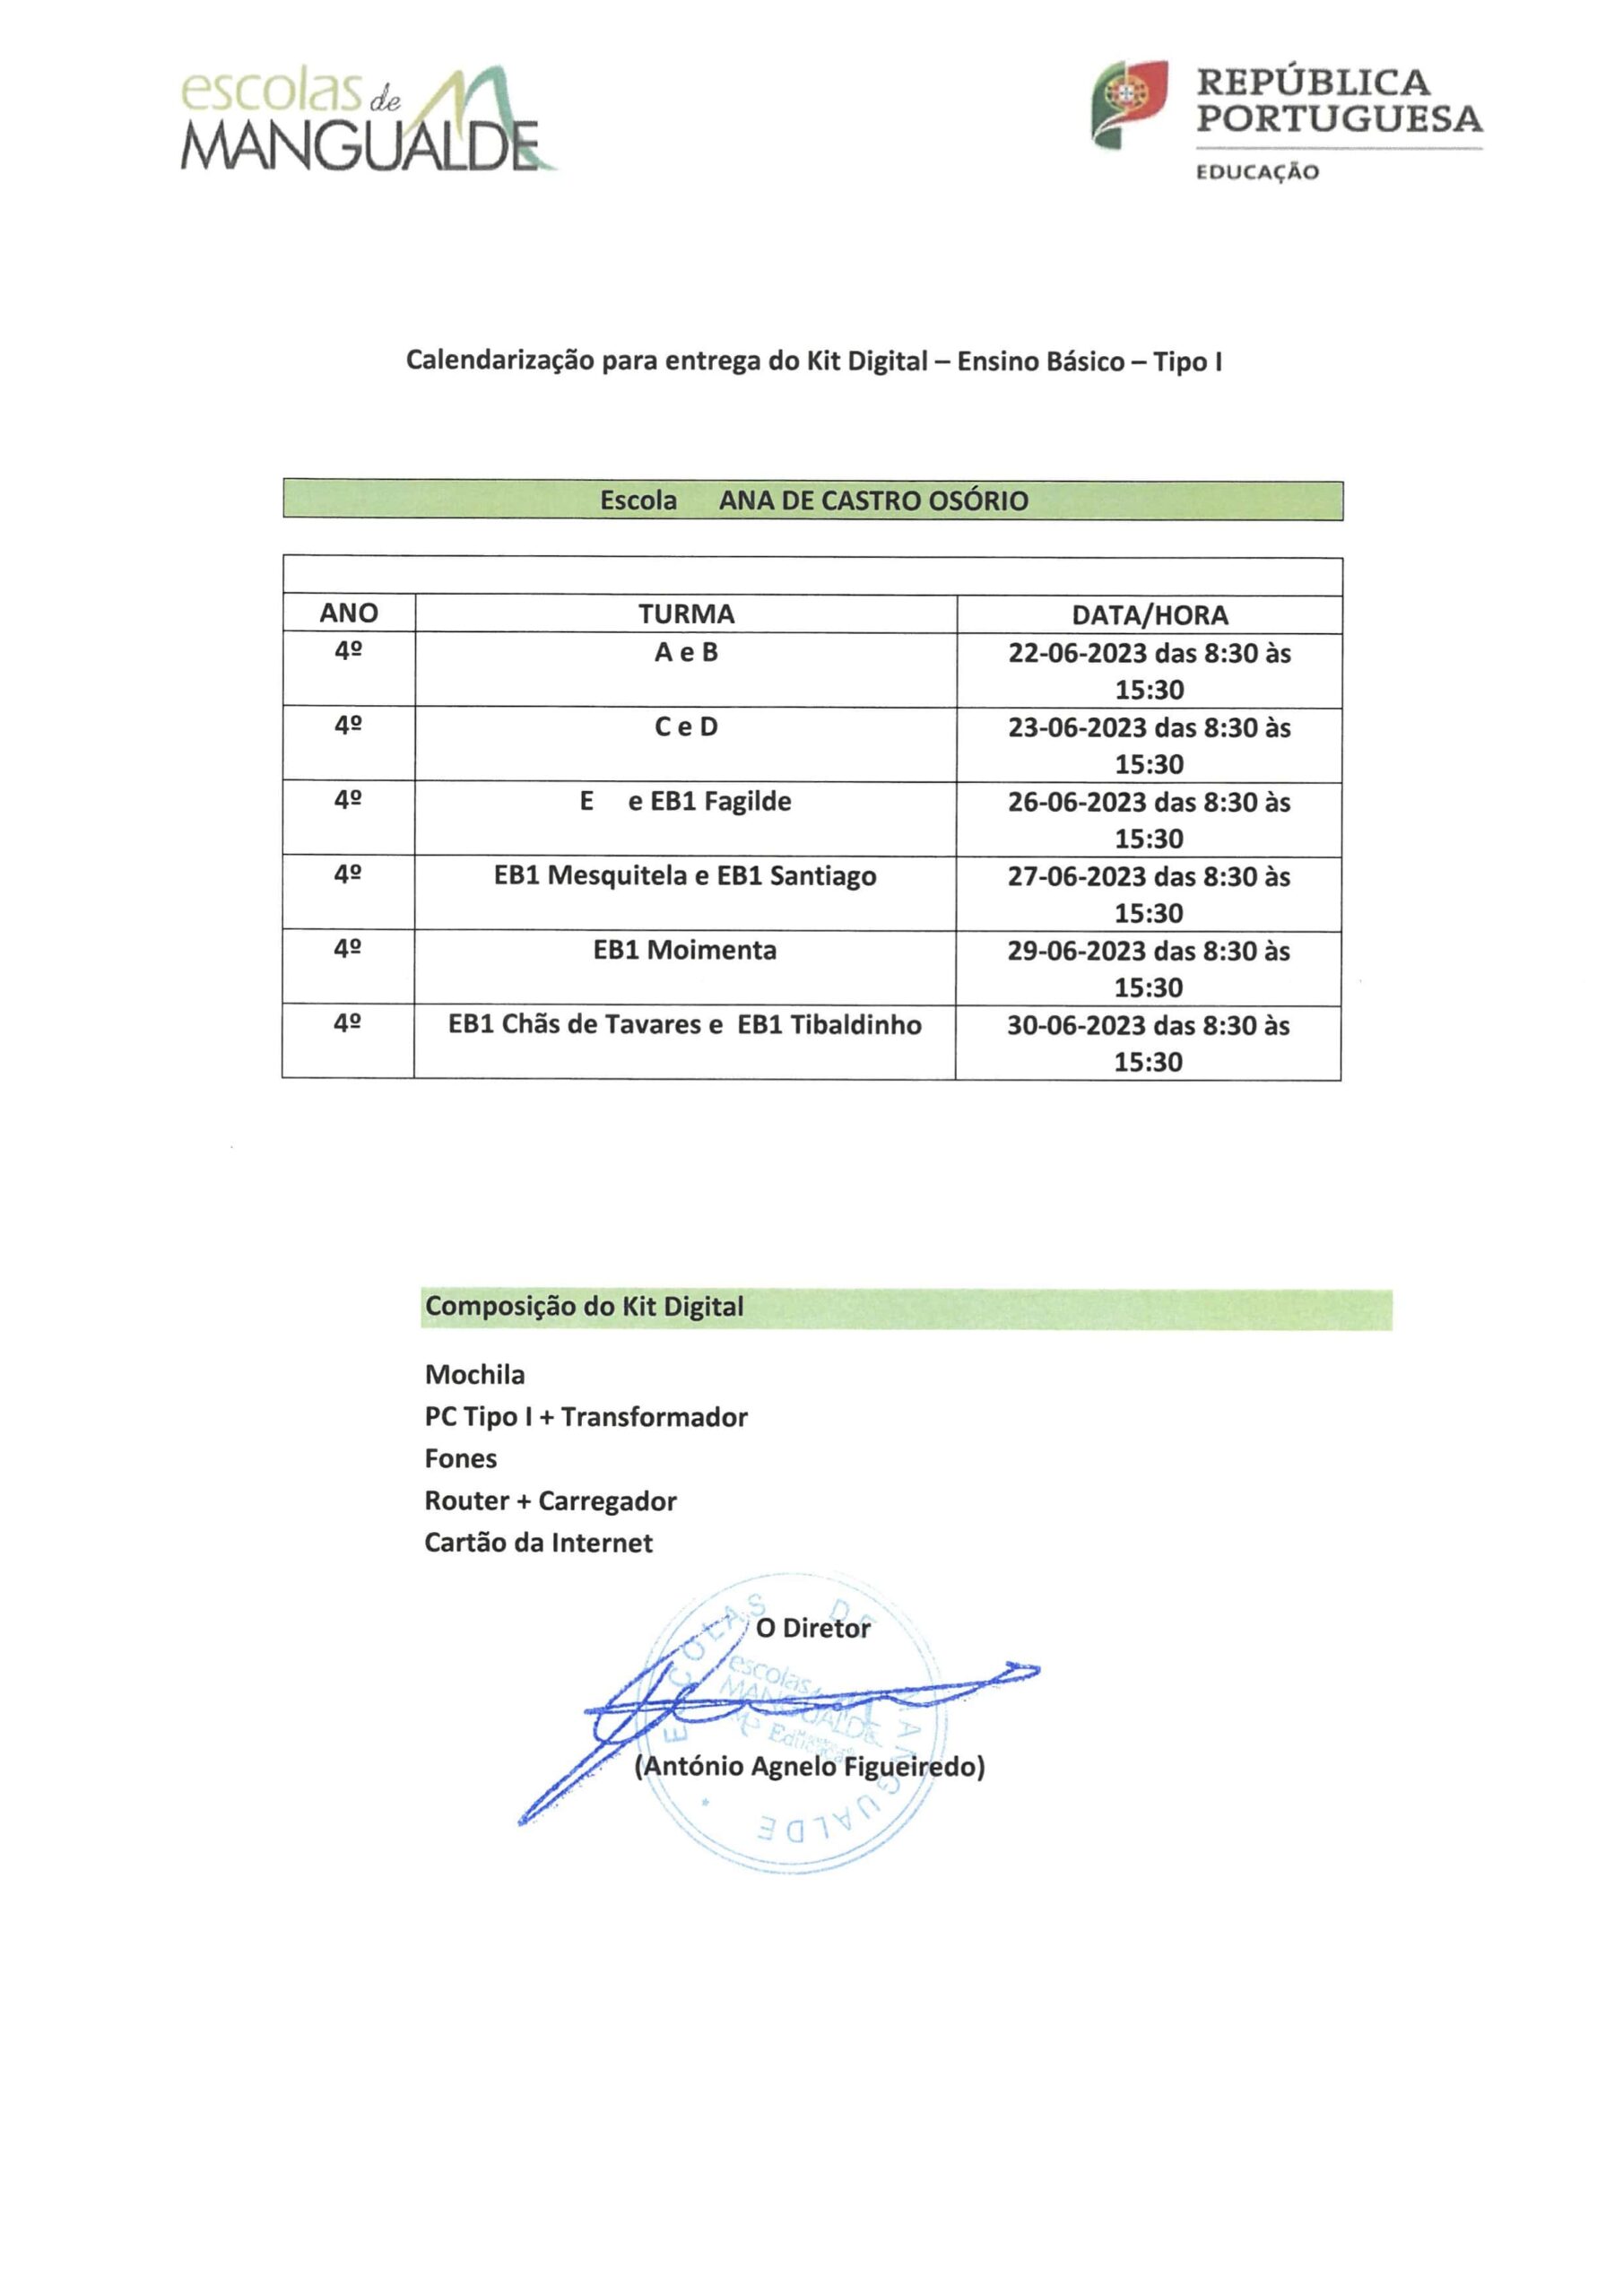 Calendarização da entrega do Kit Digital – Ensino Básico – Tipo II na Escola Ana de Castro Osório